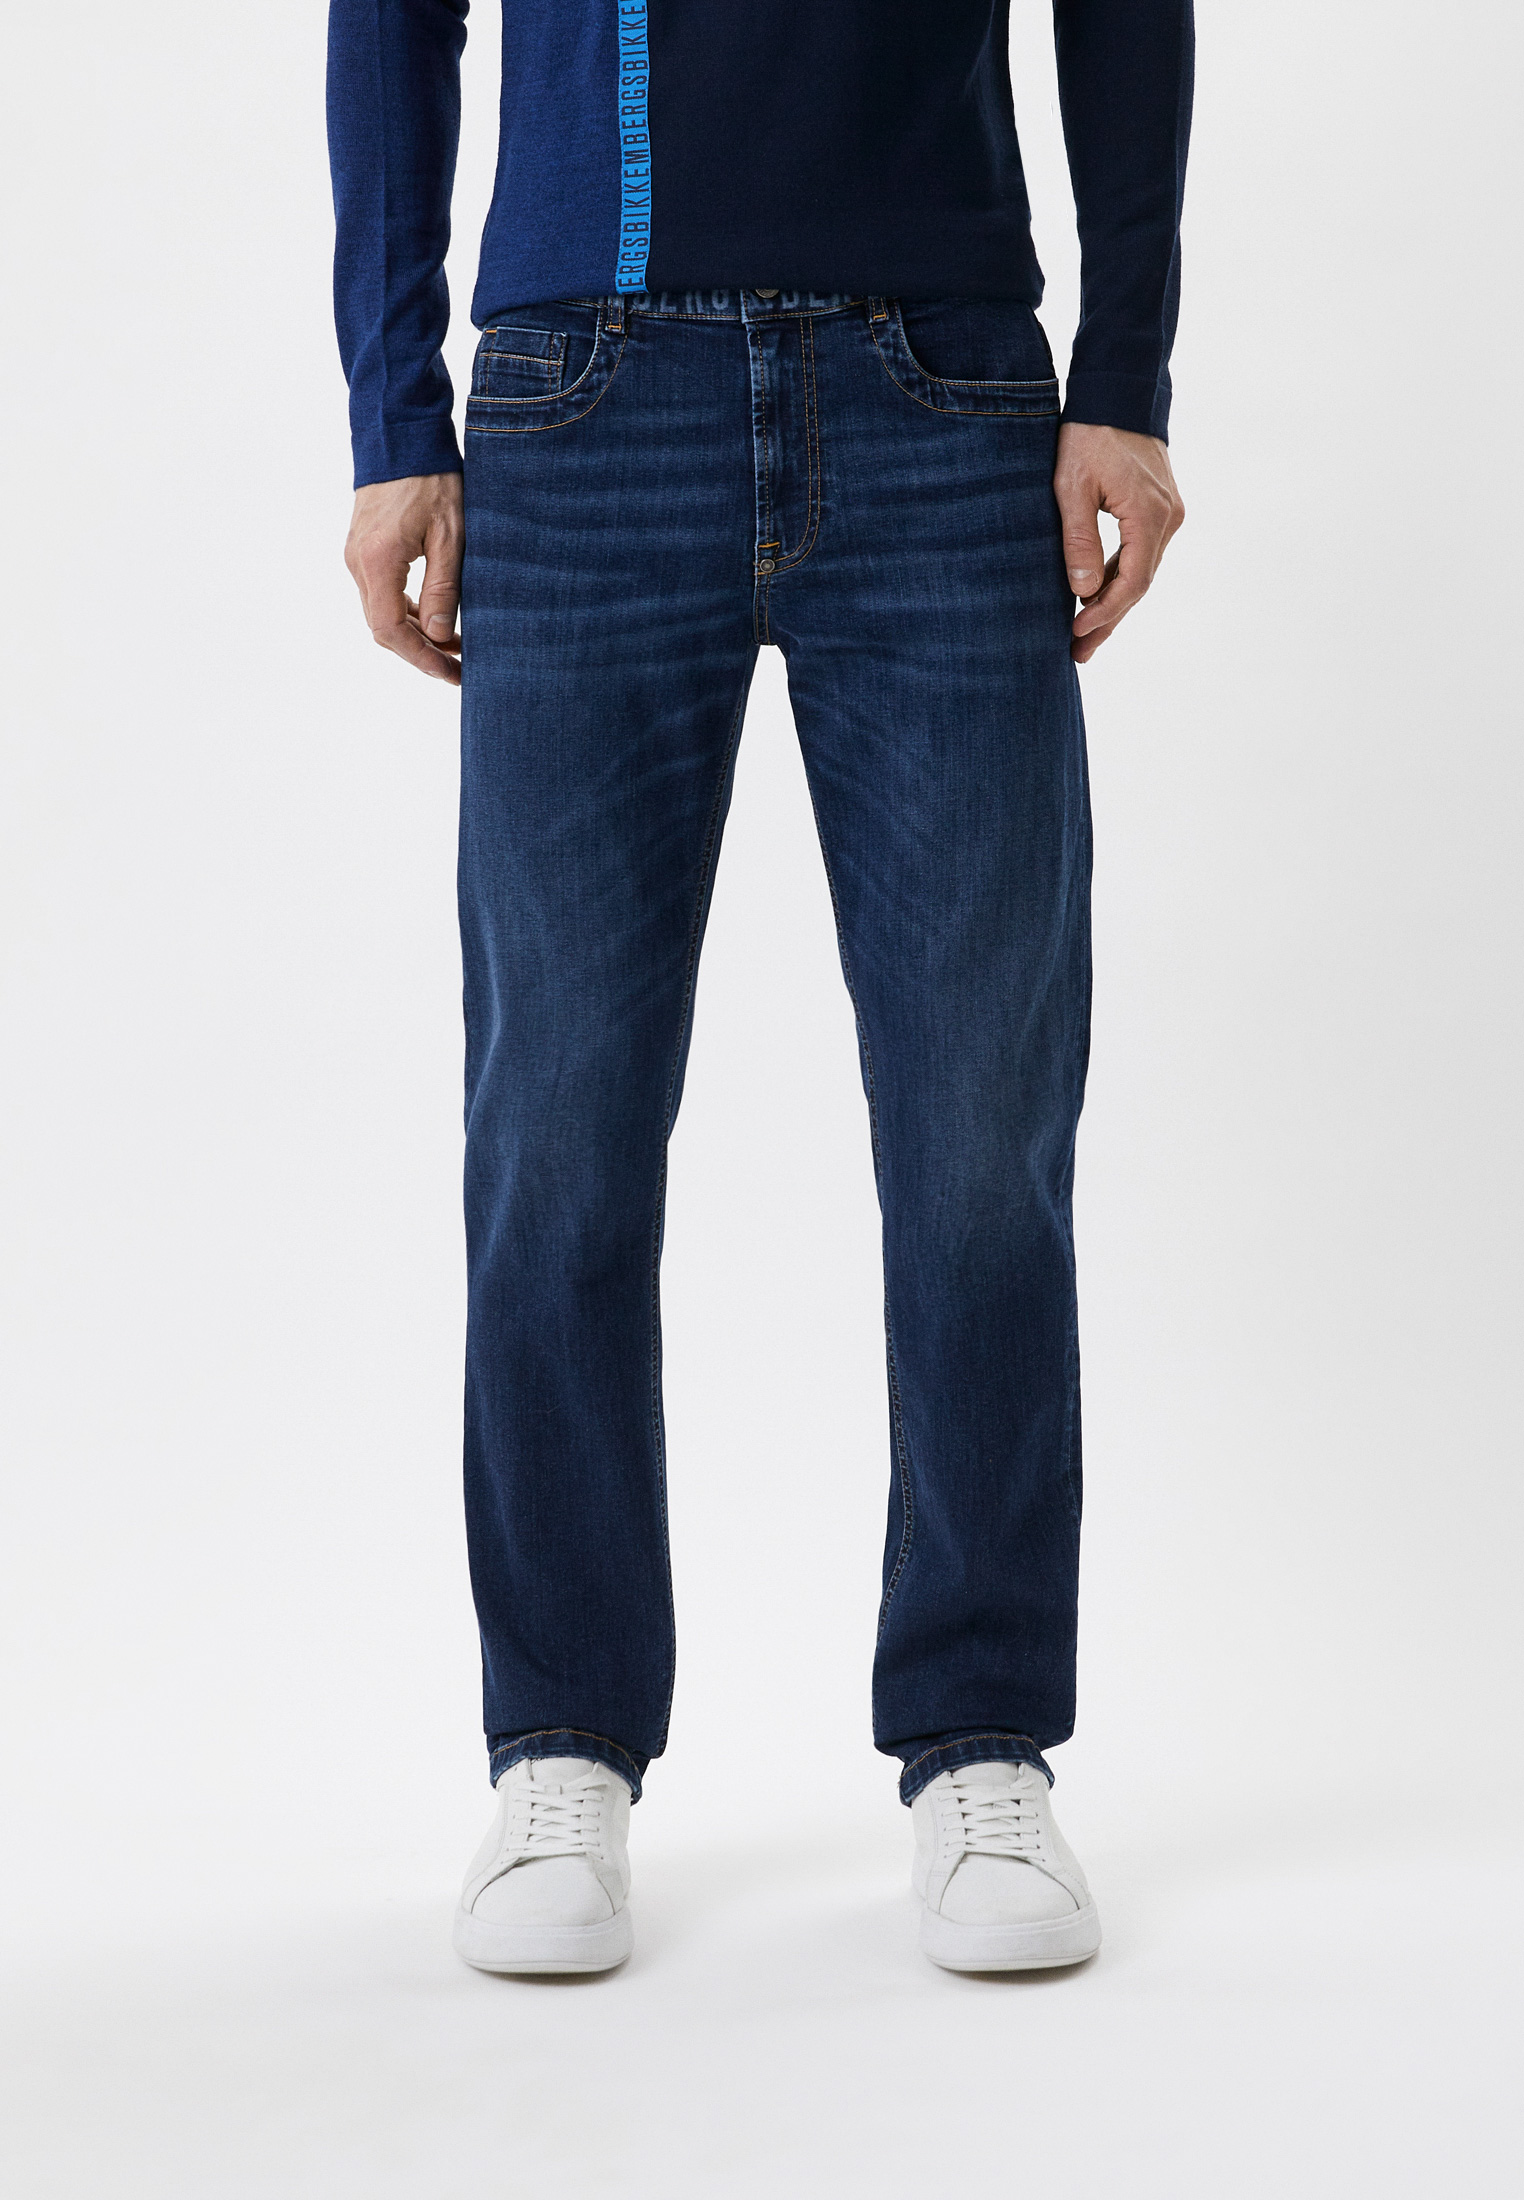 Мужские прямые джинсы Bikkembergs (Биккембергс) CQ10272S3511: изображение 1